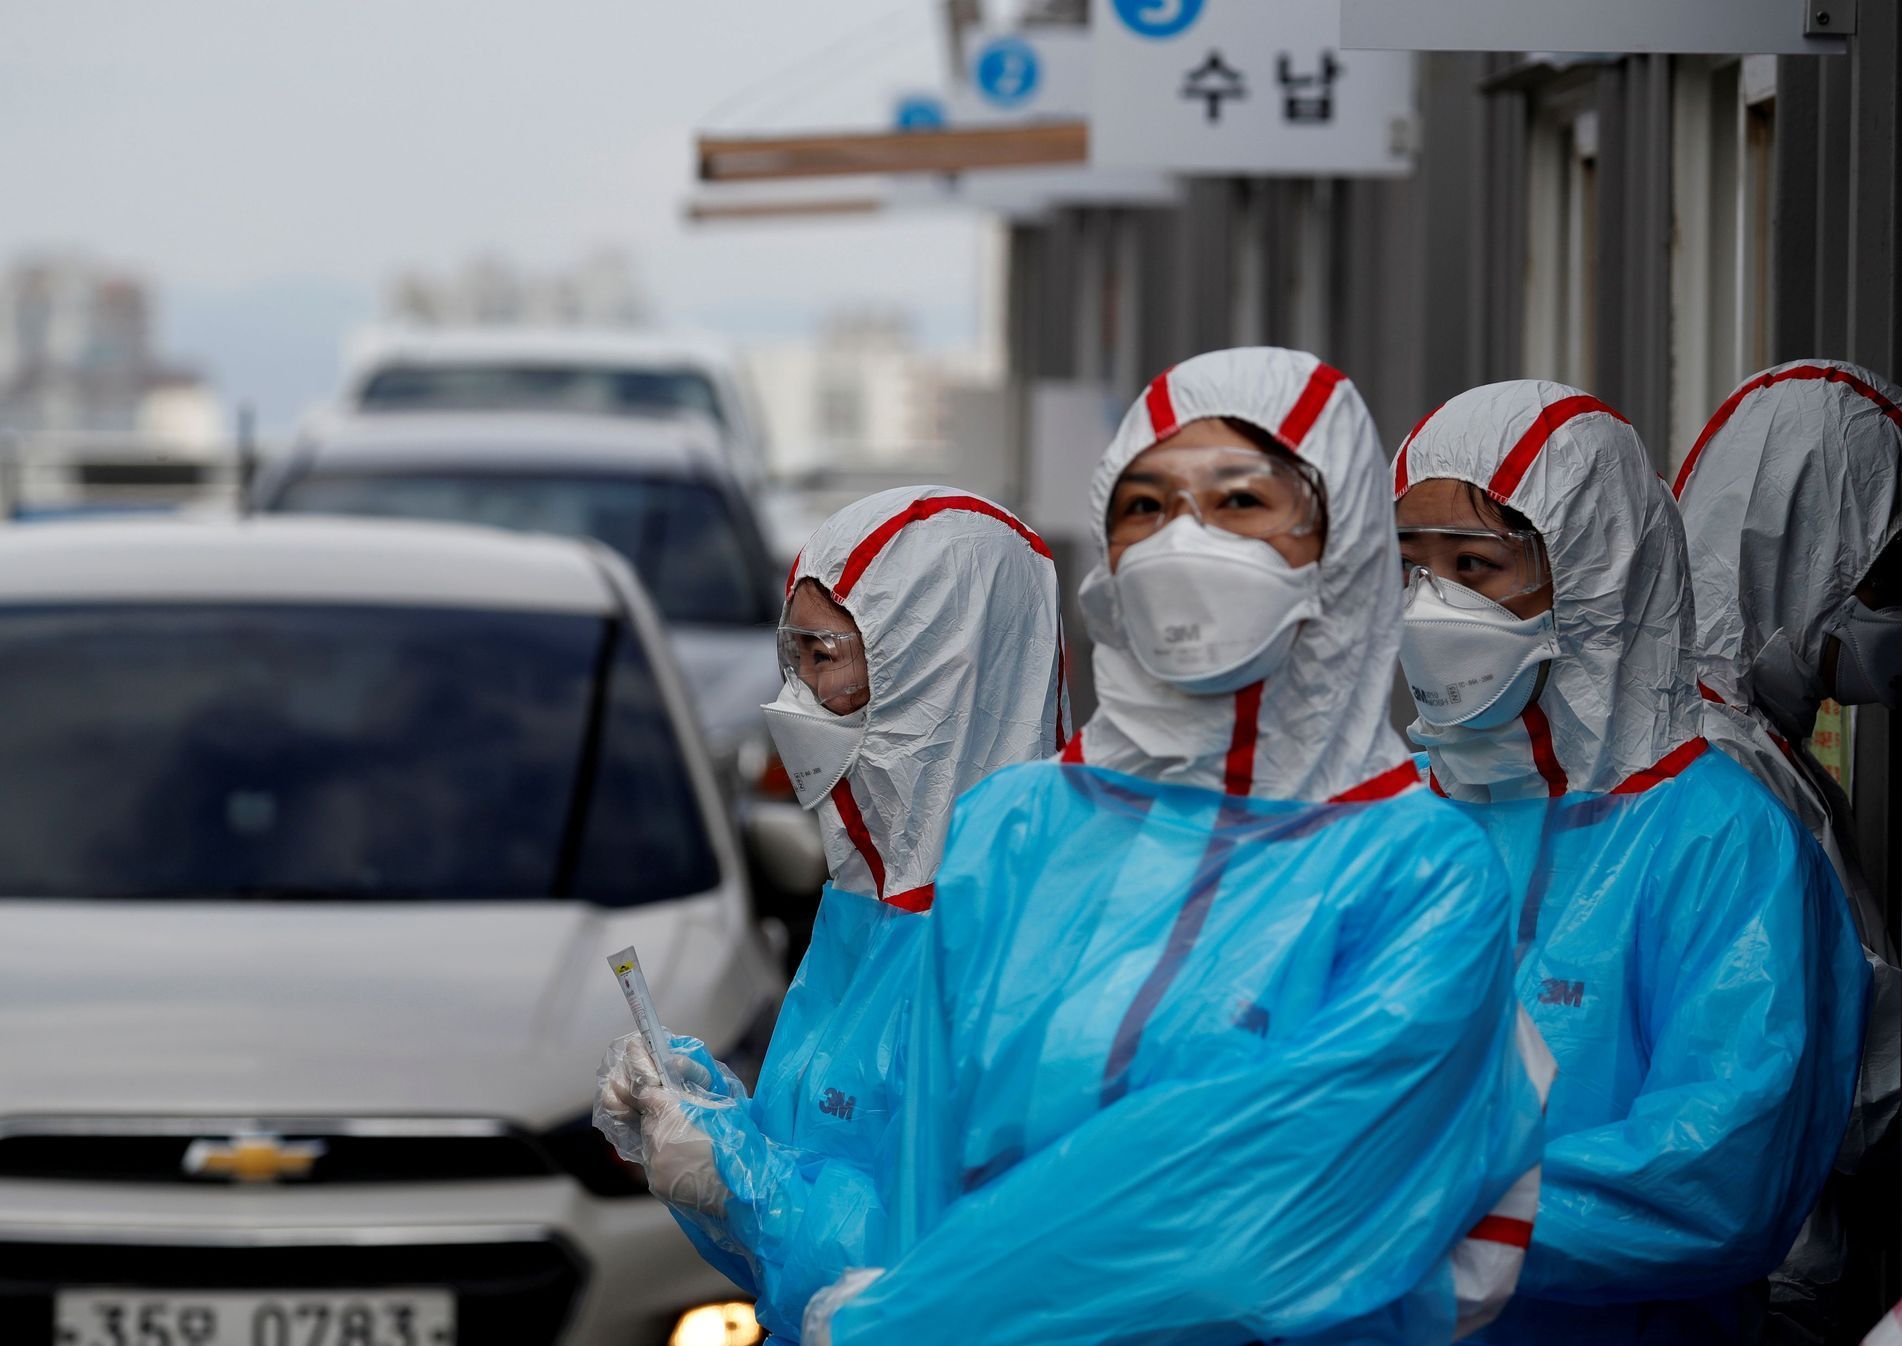 Testování na koronavirus v takzvaném "drive-in" v Jižní Koreji.